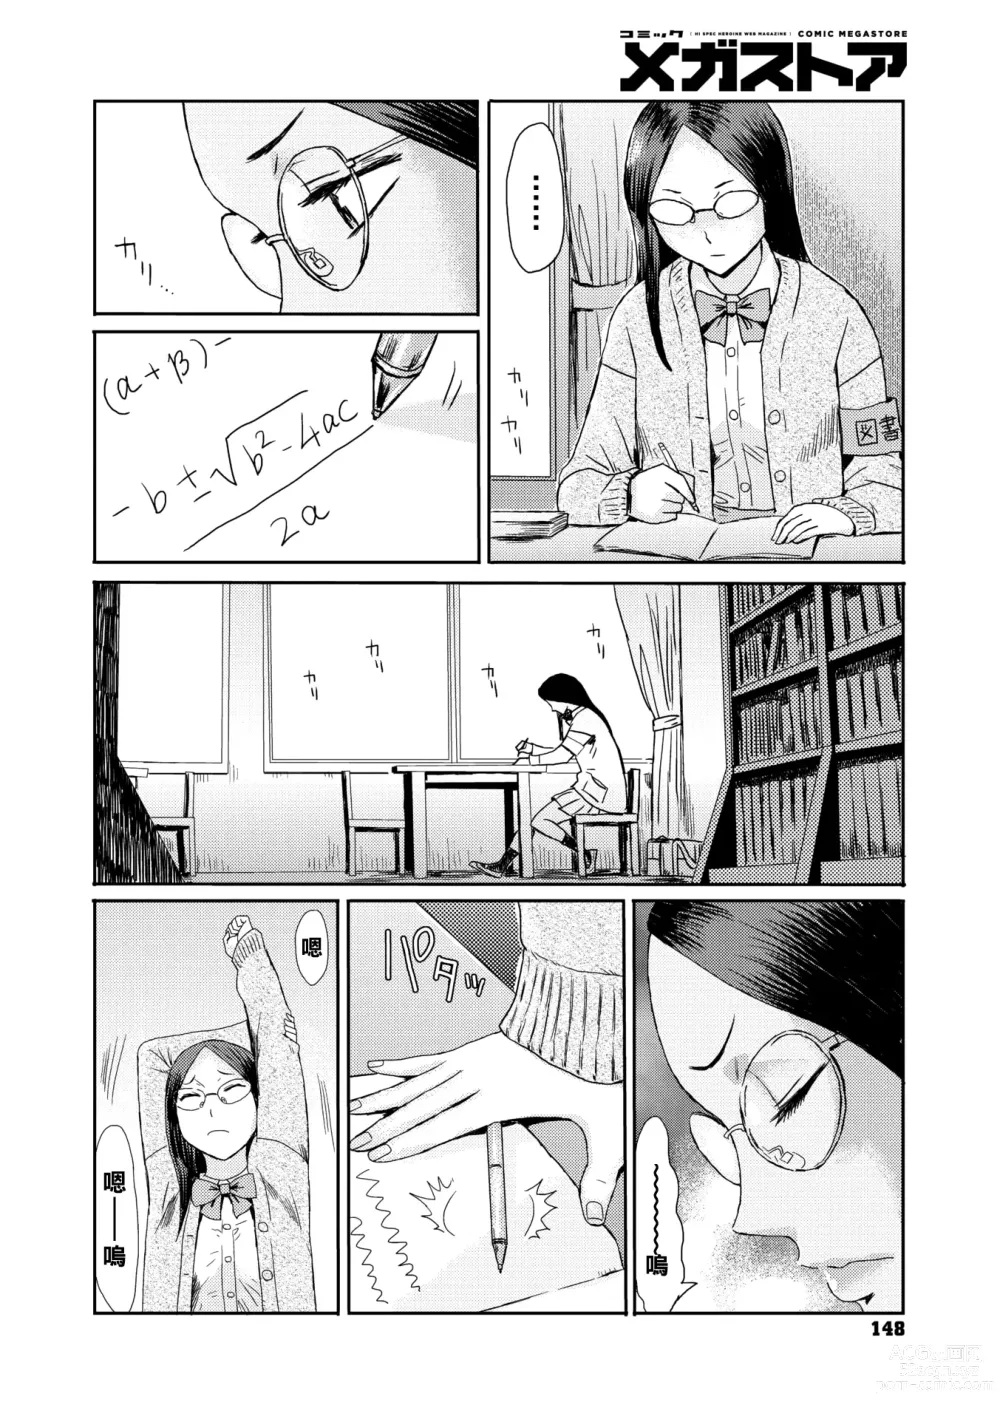 Page 2 of manga Danger Pair